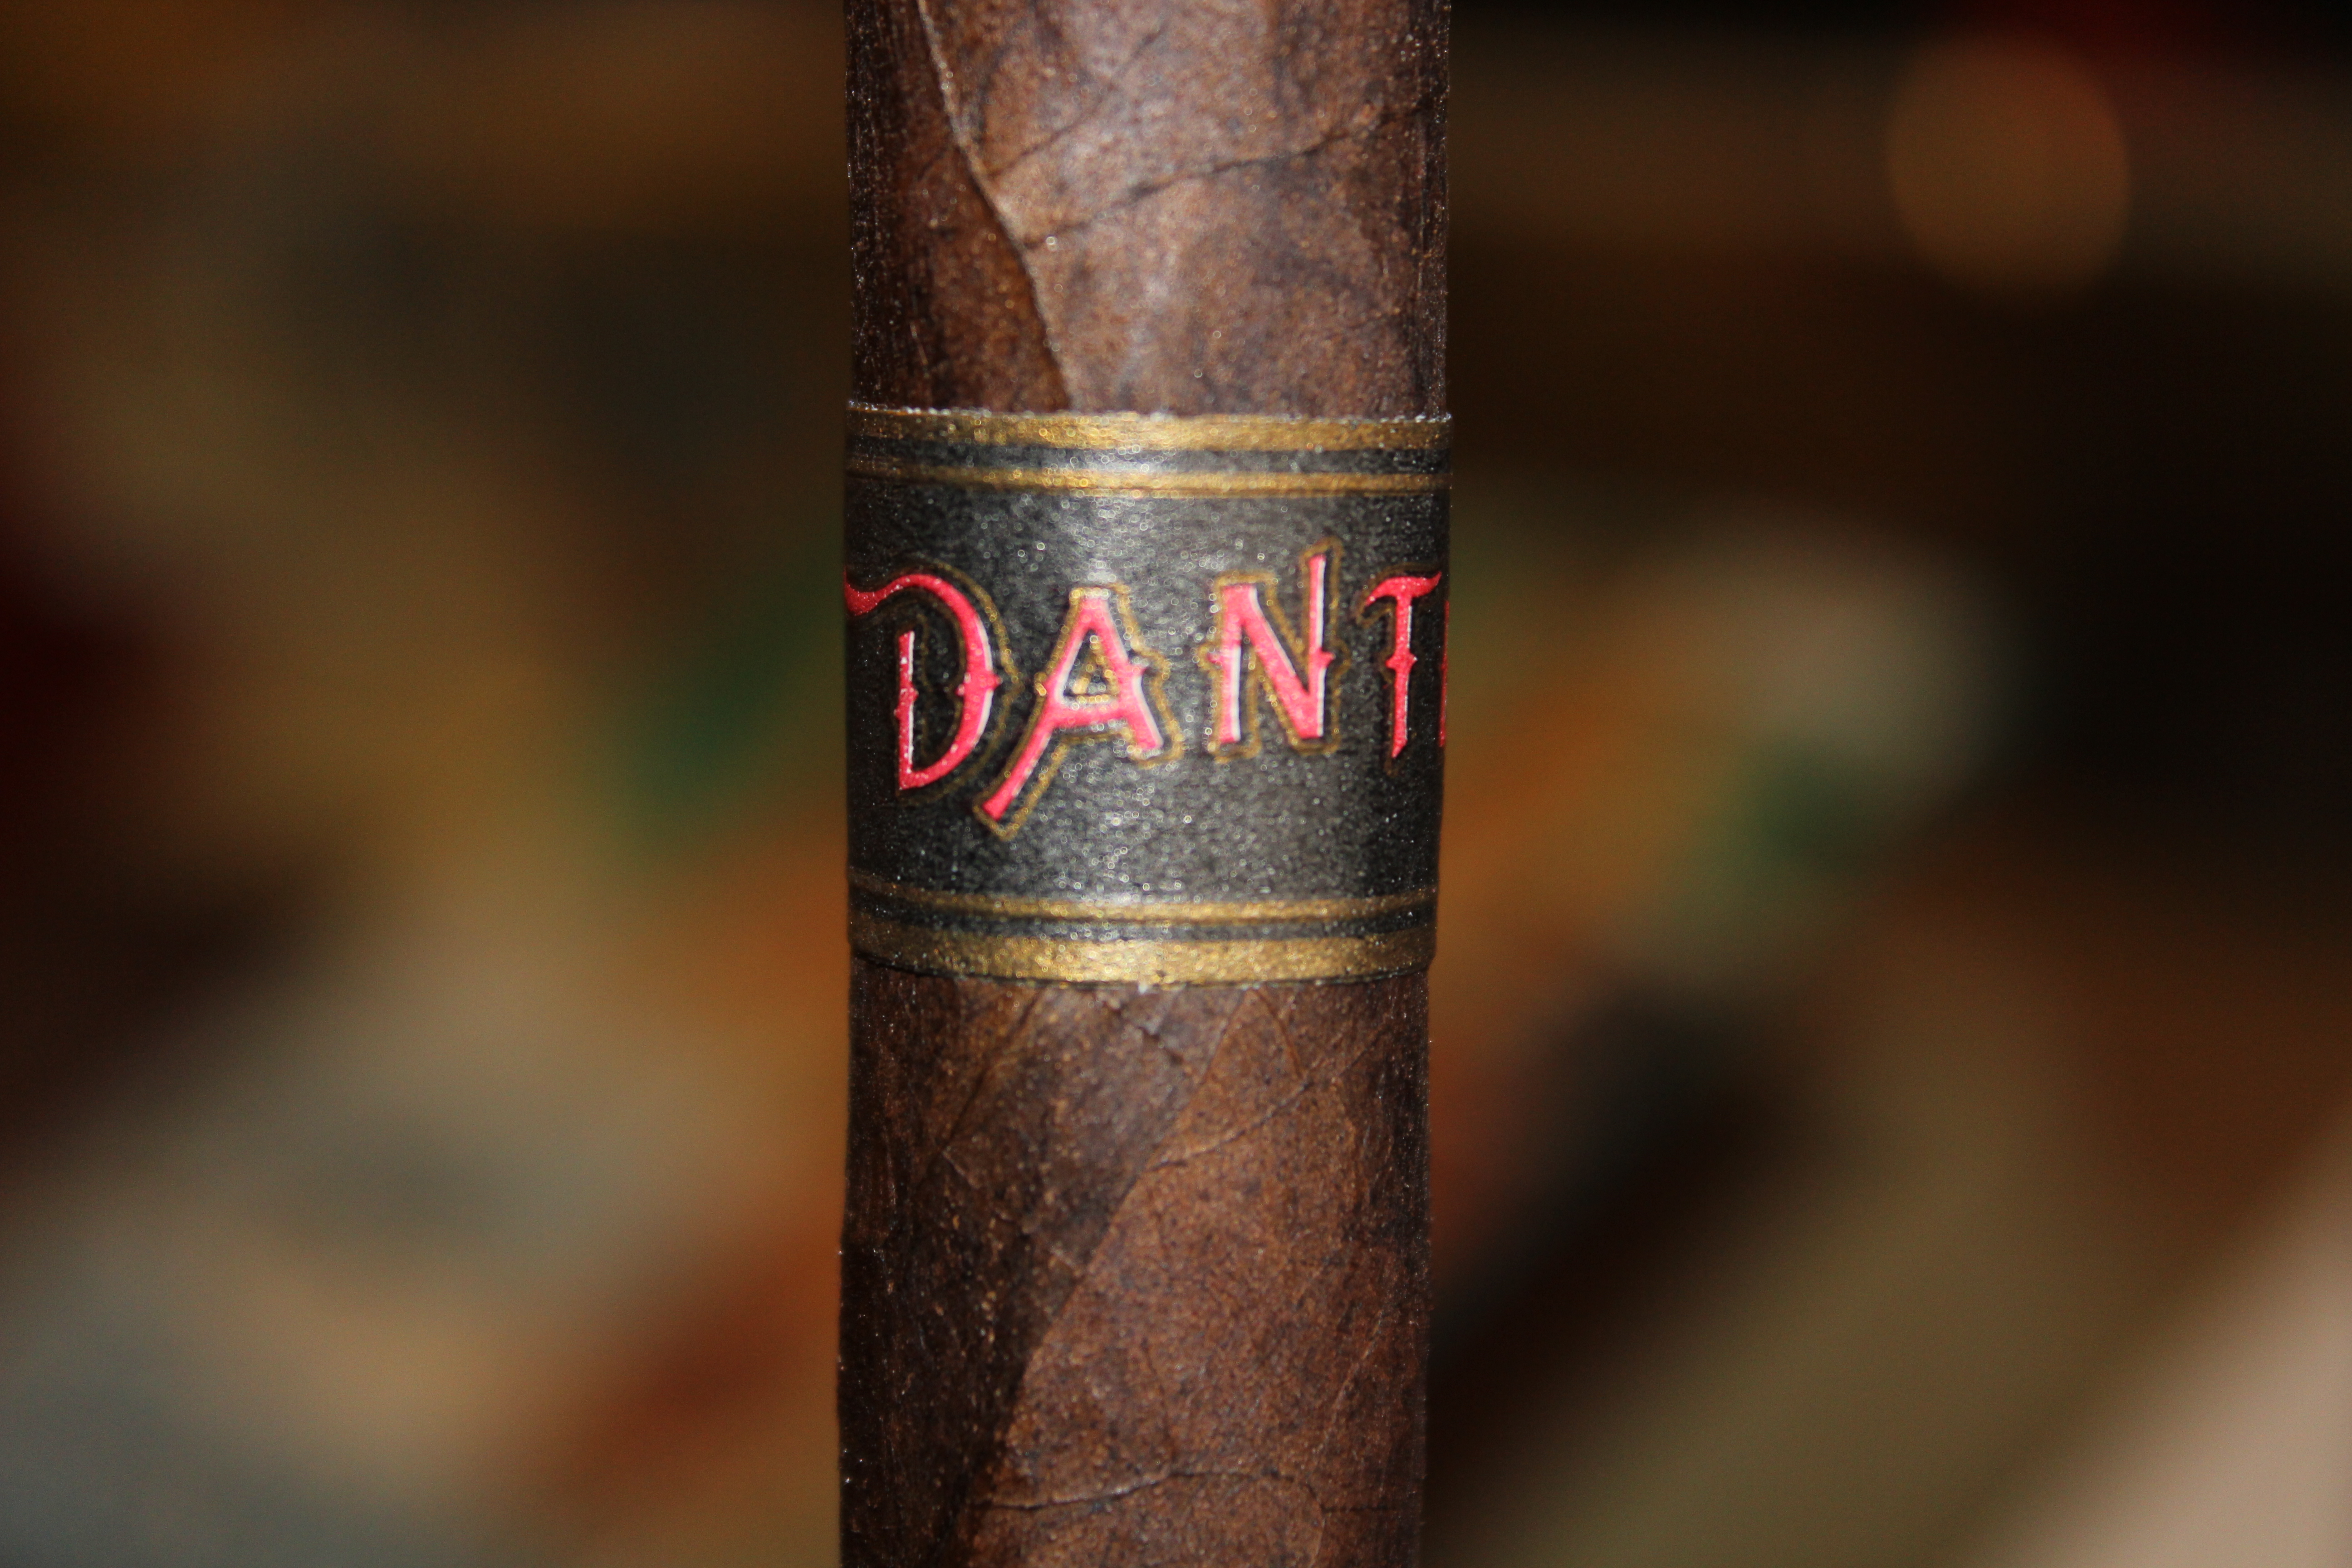 Dante Canto VI: “Asmodeus” – Cigar Review